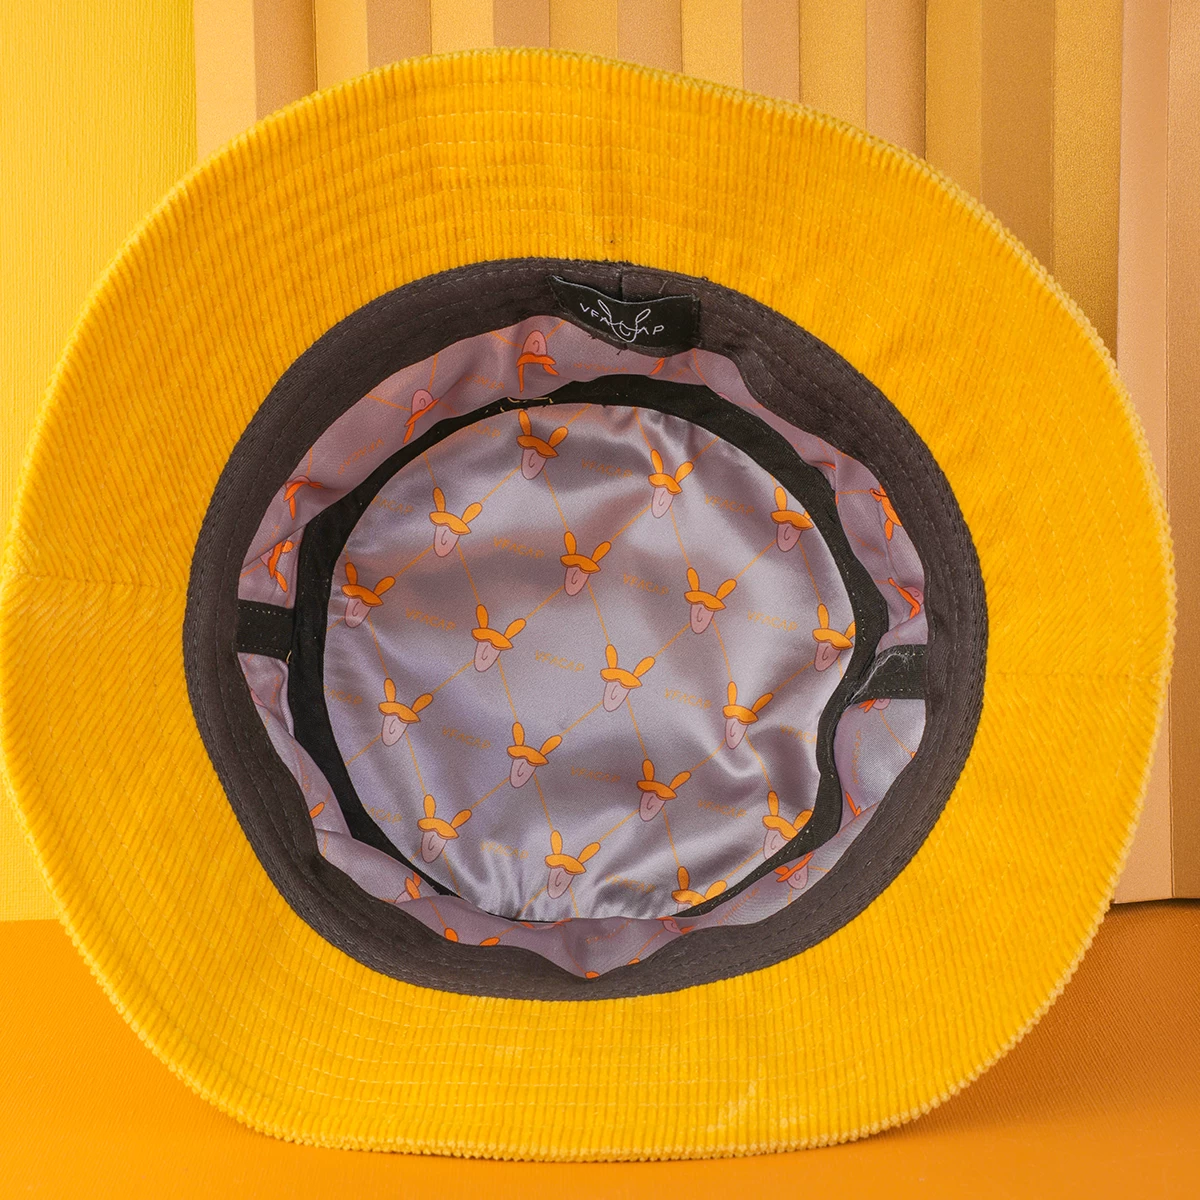 embroidery vfa logo yellow corduroy bucket hats custom